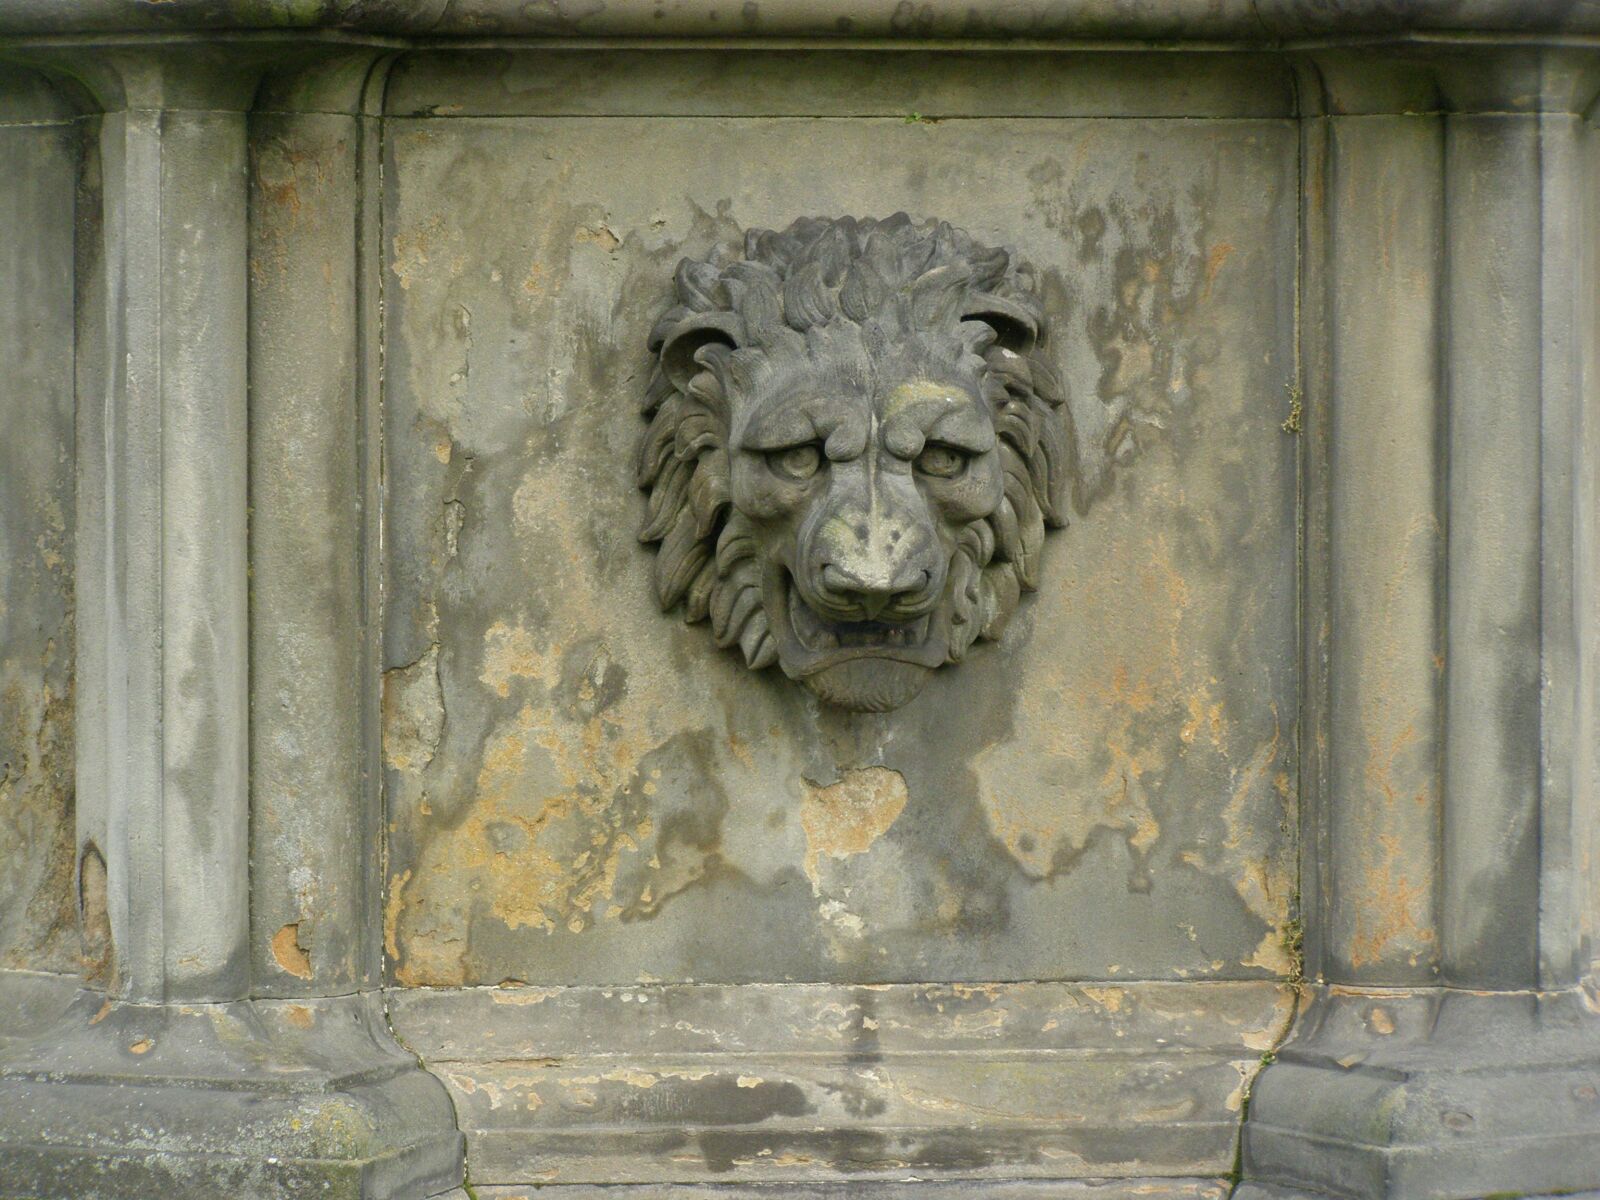 Olympus SP510UZ sample photo. Lion, holyrood palace, edinburgh photography